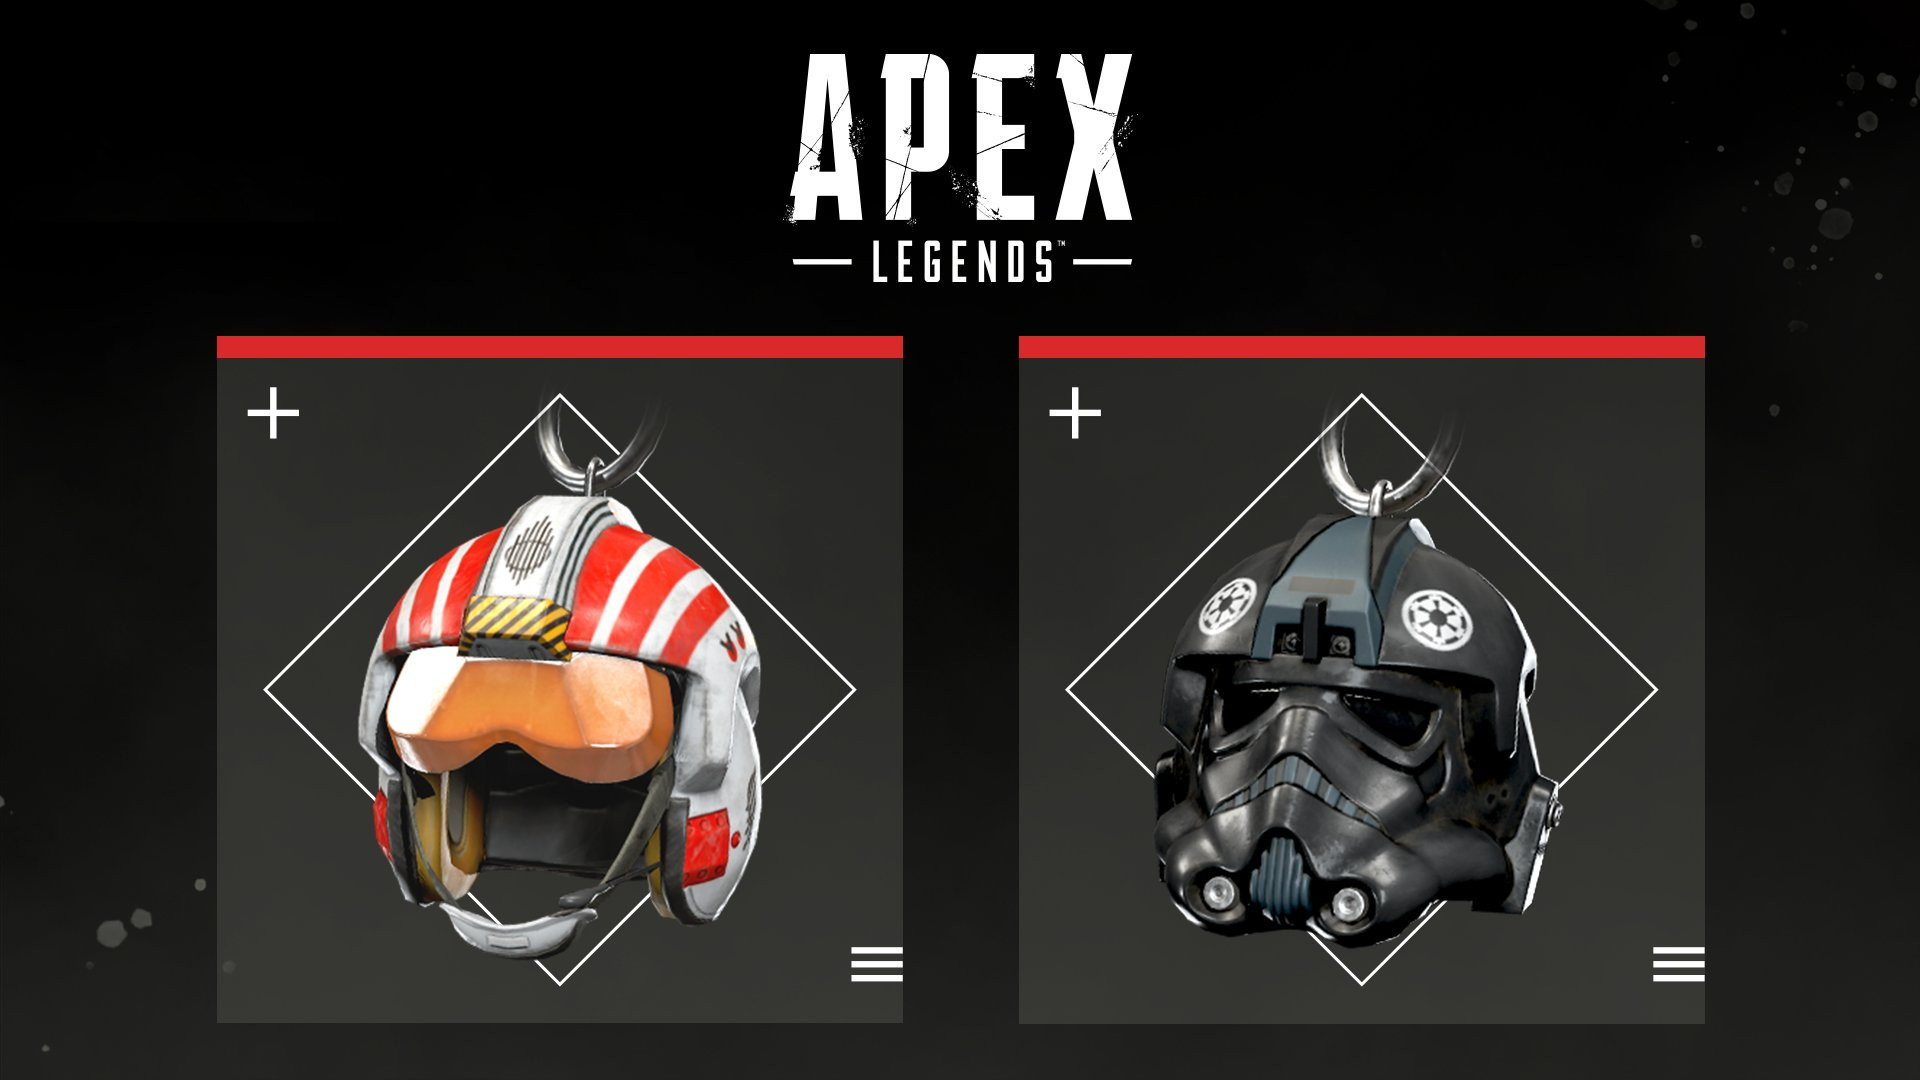 Apex Legends - STAR WARS Weapon Charms DLC XBOX One / XBOX Series X|S CD Key 5.08 USD